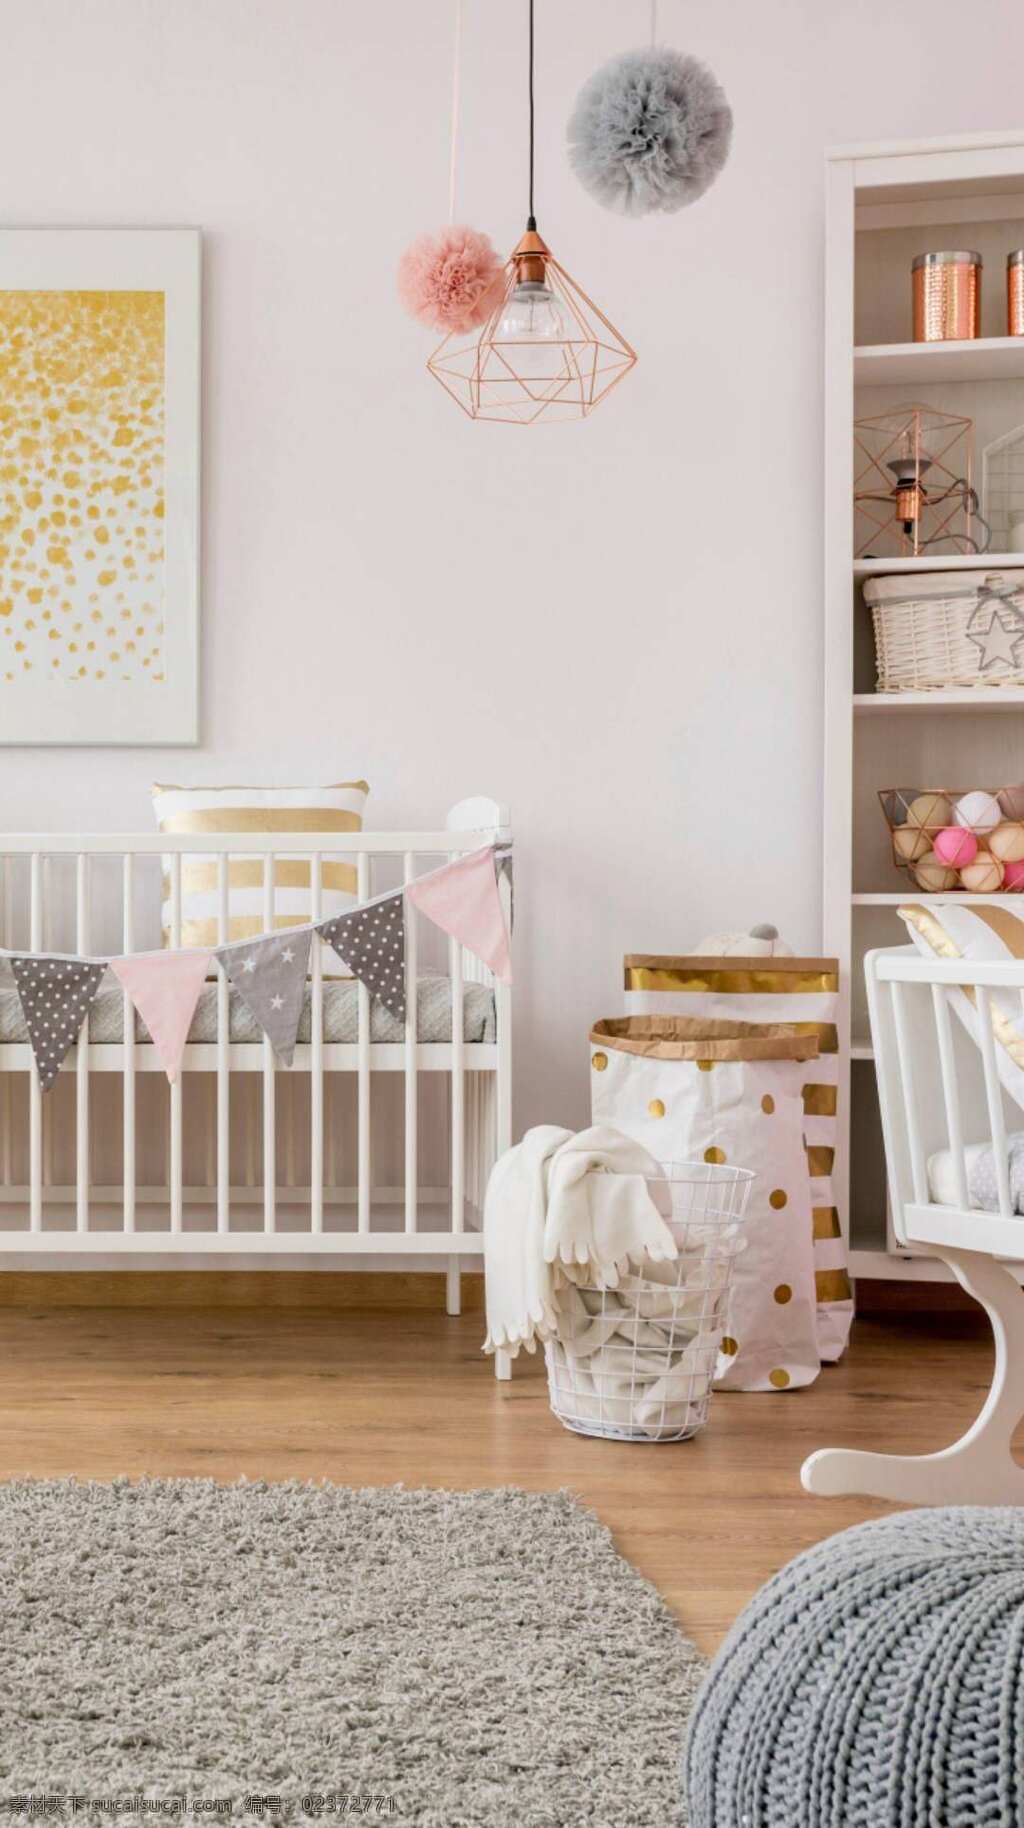 美观的婴儿房 实用的婴儿房 洁白的墙壁 婴儿床 高清壁纸 生活百科 家居生活